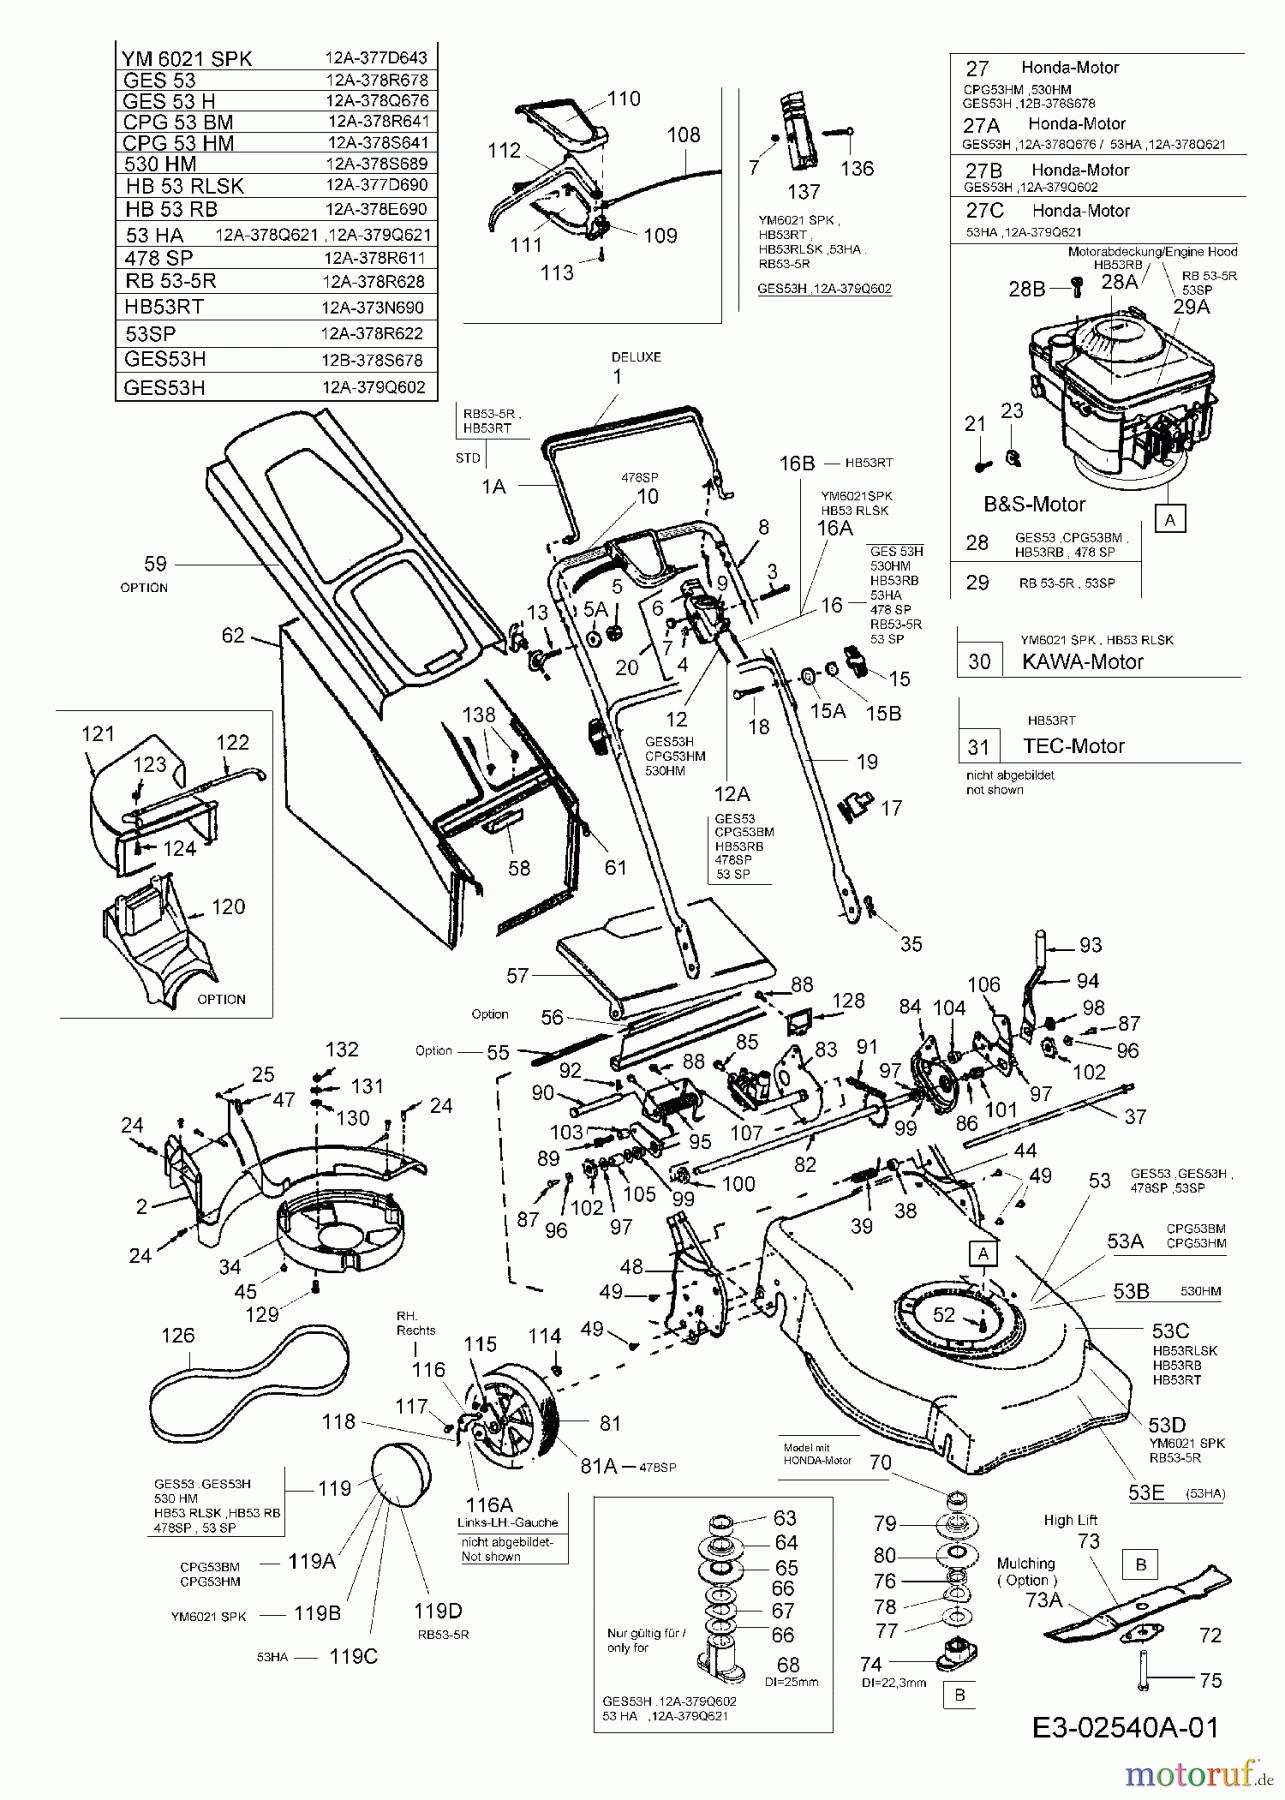  MTD Motormäher mit Antrieb GES 53 12A-378R678  (2005) Grundgerät